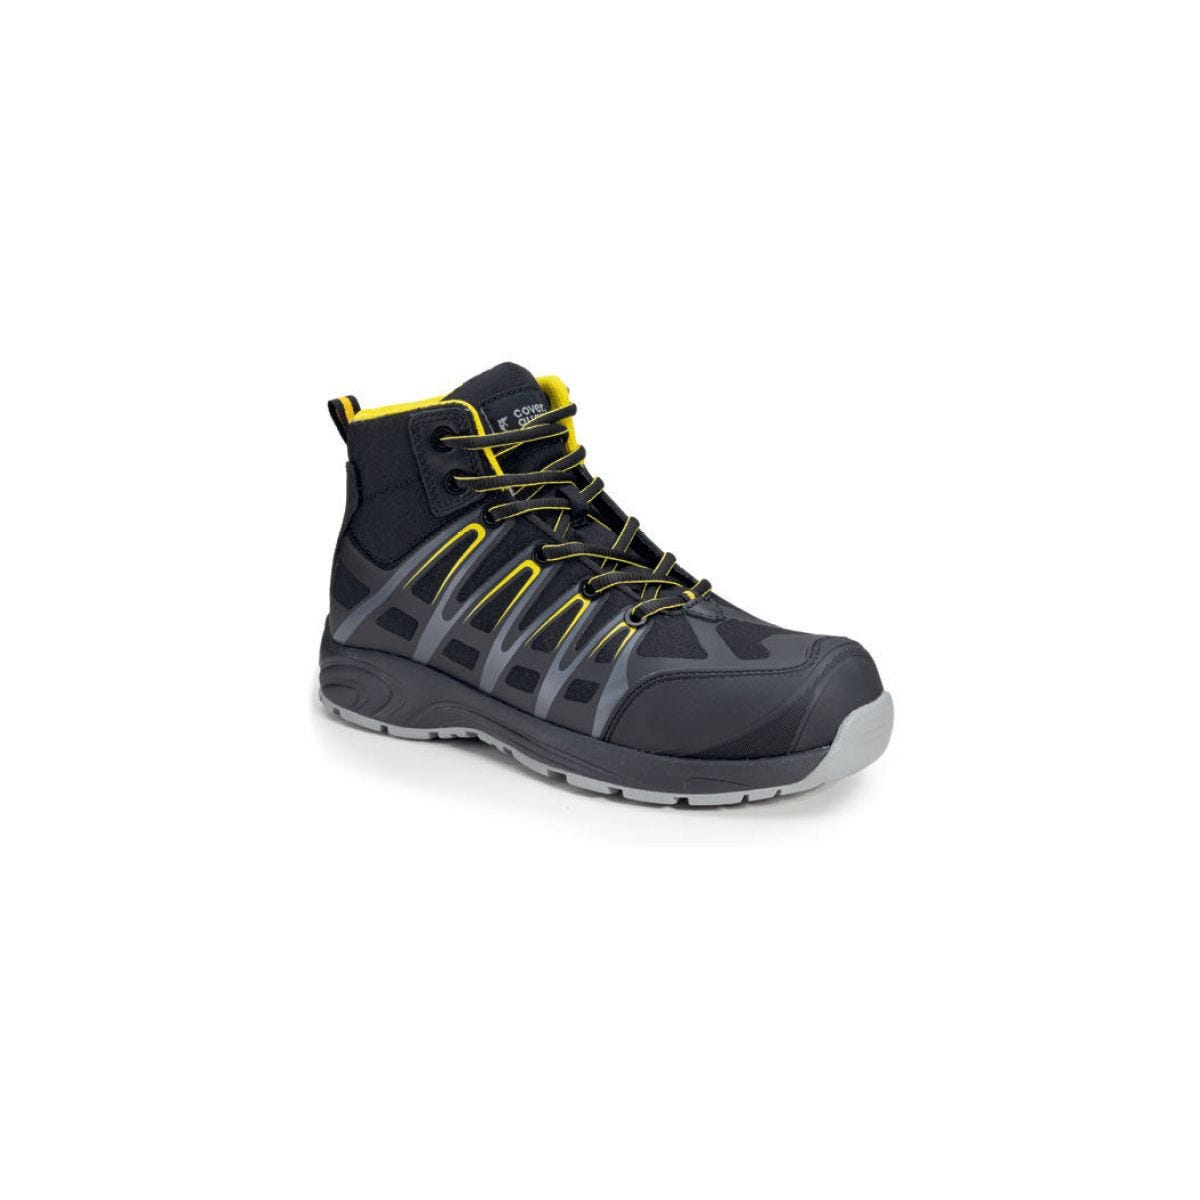 Chaussures de sécurité hautes ALUNI S3 noir et jaune - Coverguard - Taille 40 0